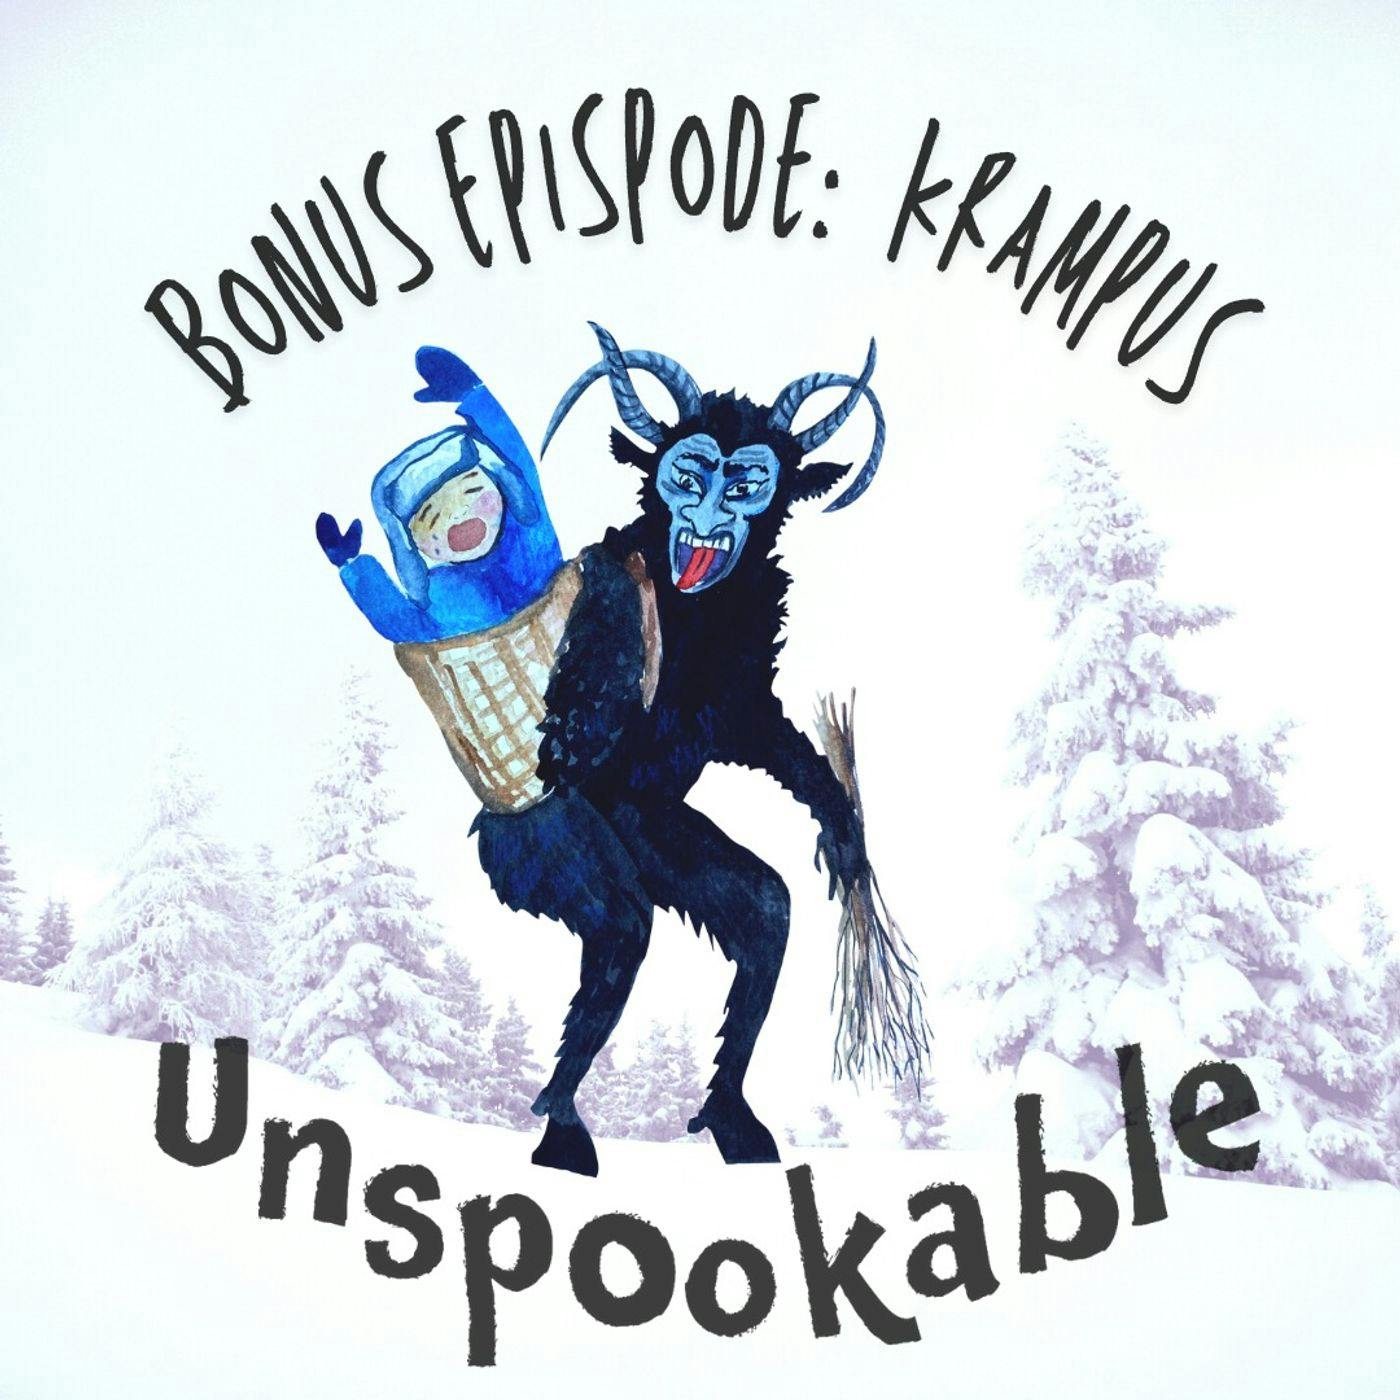 Bonus Holiday Episode: Krampus